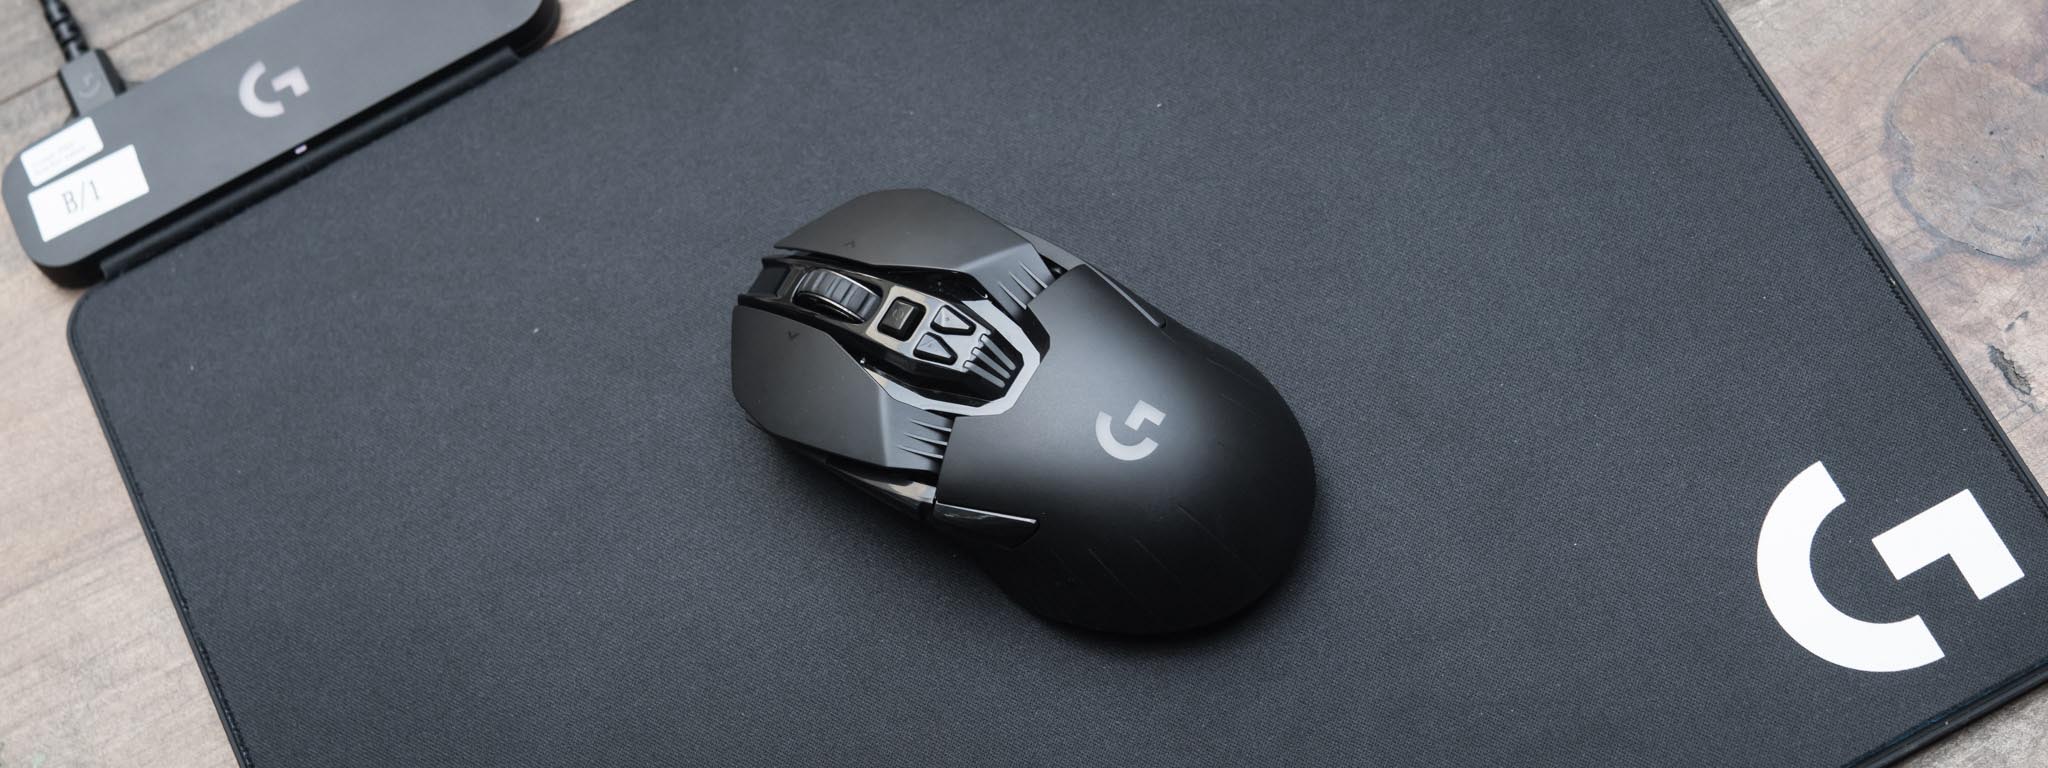 Logitech PowerPlay và G903 LightSpeed: dùng chuột không dây không lo hết pin!